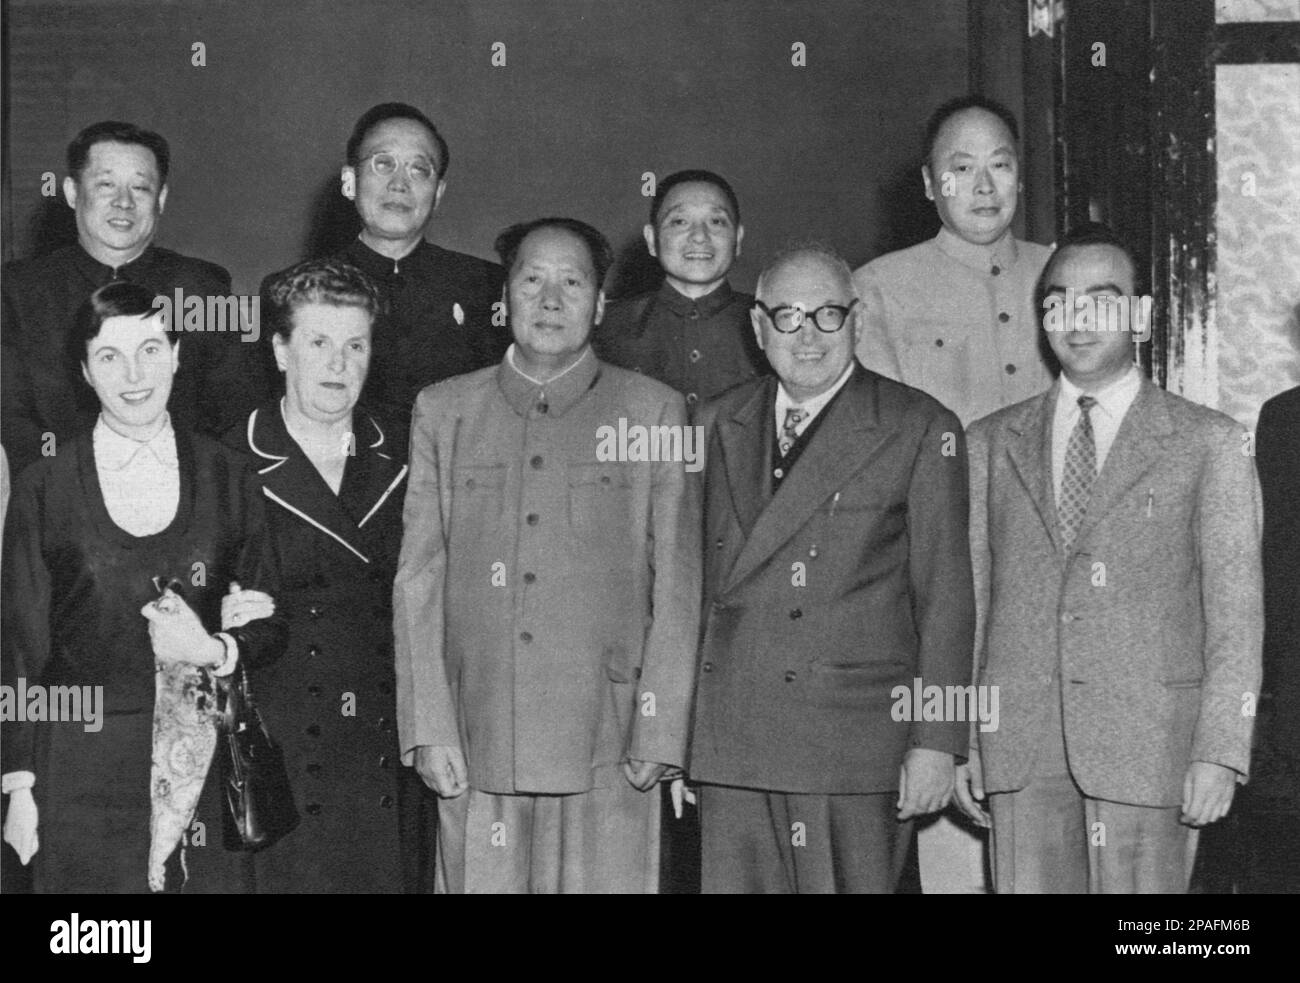 1963 CA , CHINE : le Président de la République populaire de Chine Mao Tse-TUNG rencontre la délégation italienne et le politicien socialiste PIETRO NENNI ( 1891 - 1980 ) -Tse-Dun - TZE-Thung - Tze-Dong - COMUNISTA - COMMUNISTE - COMUNISMO - COMMUNISME - CINA - portrait - POLITICA - POLITICO - PRESIDENTE DELLA REPUBBLICA POPOLARE CINESE - ITALIA - POLITIC - portrait - ITALIE - PARTITO SOCIALISTA ITALIANO - PSI - Mao Zedong - Tse-TUNG - Tse-TUNG Mao Tse-toung ---- ARCHIVIO GBB Banque D'Images